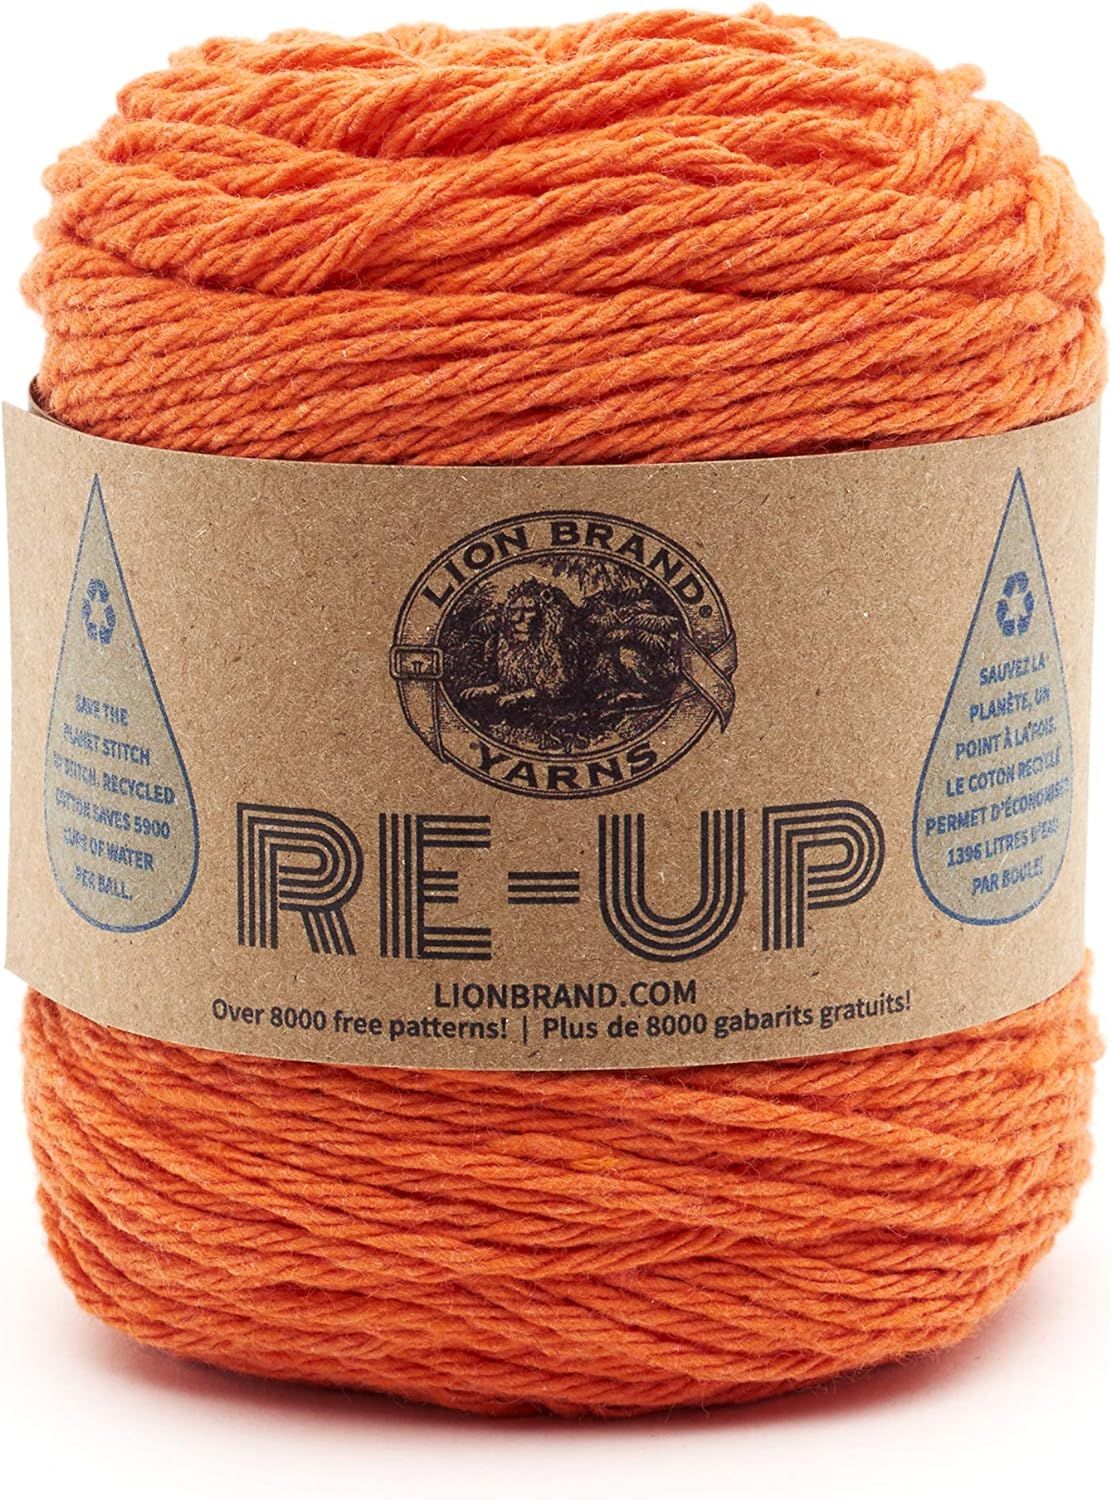 Lion Brand Yarn Re-Up Yarn, Orange (1 skein/ball) | Amazon (US)